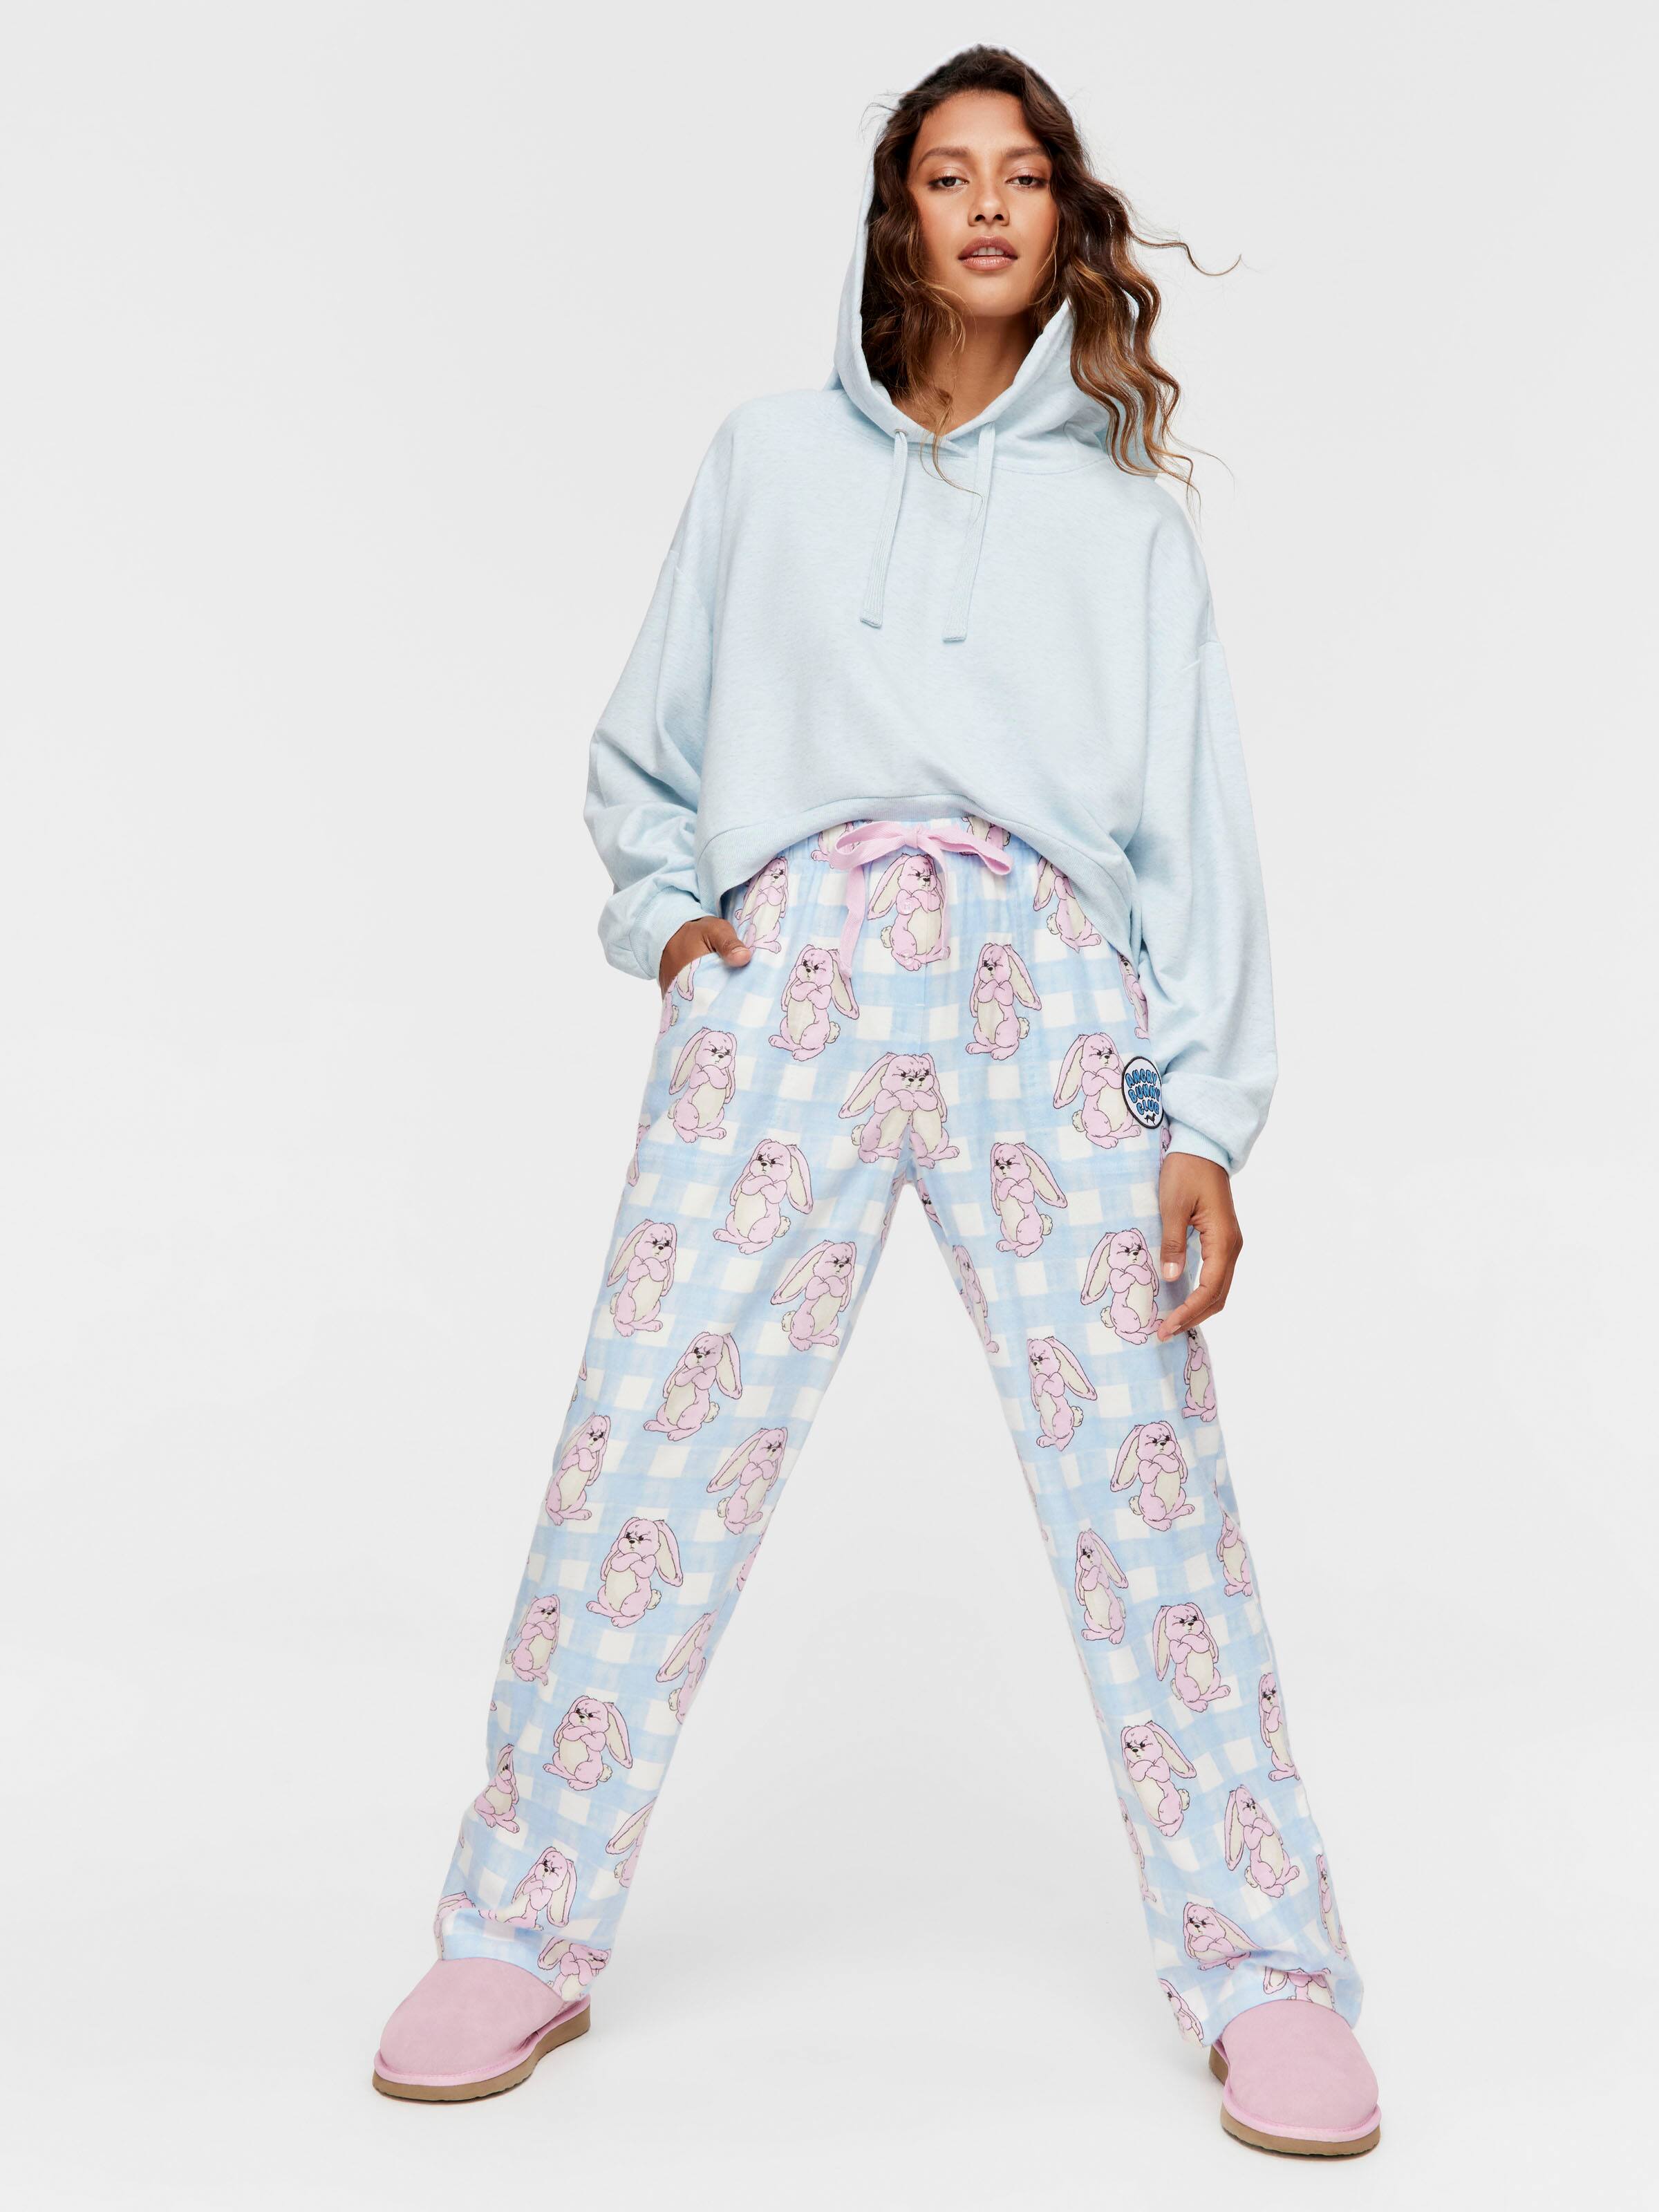 Women's Cute Bear Plush Pajama Pants, Soft Fluffy Fleece Warm Pjs Bottoms  Sleepwear Winter Comfy Fuzzy Lounge Pants